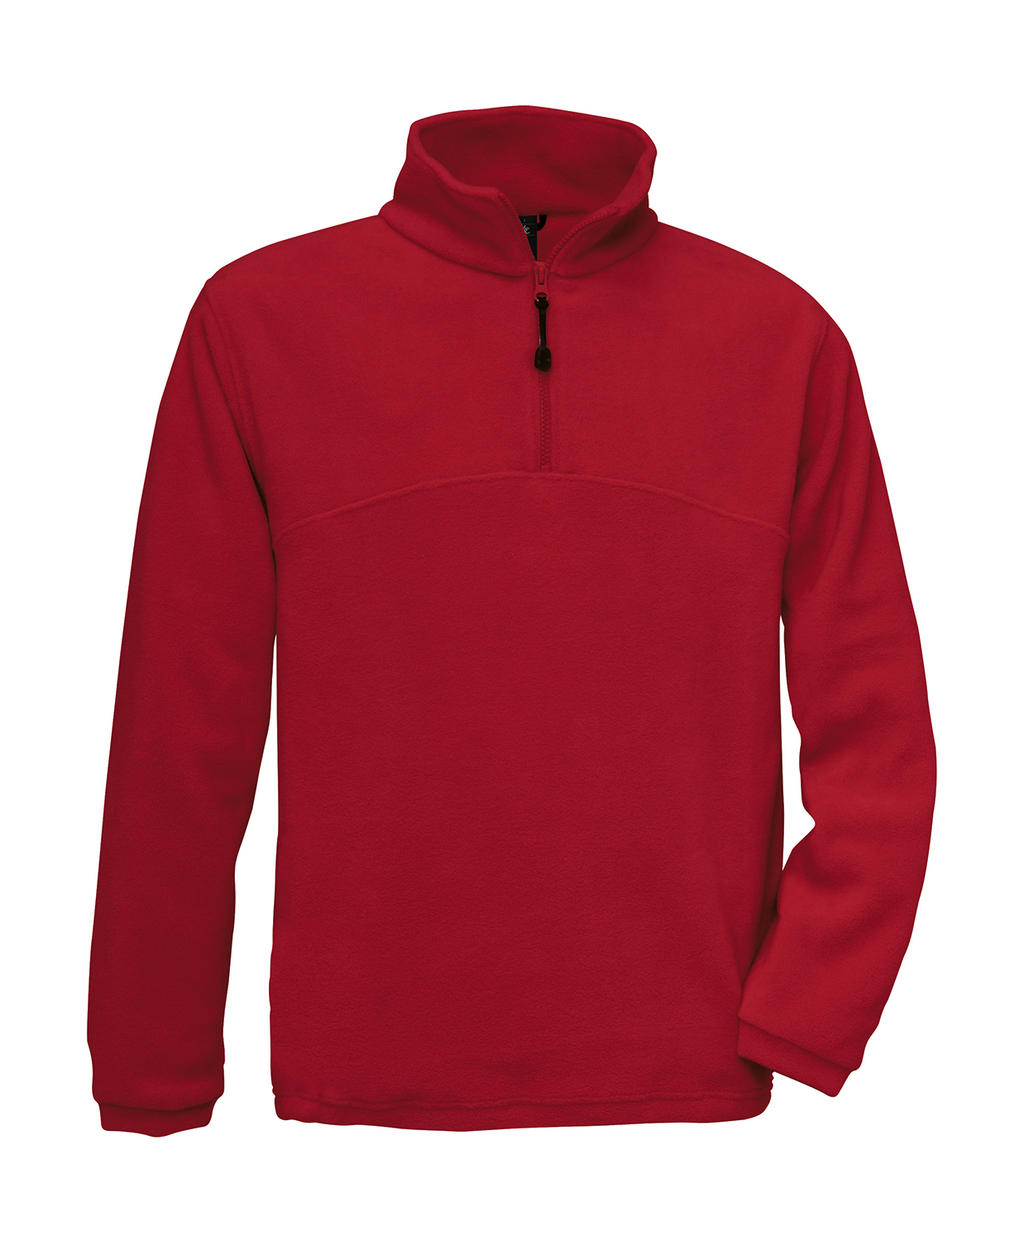  Highlander+ 1/4 Zip Fleece Top in Farbe Red